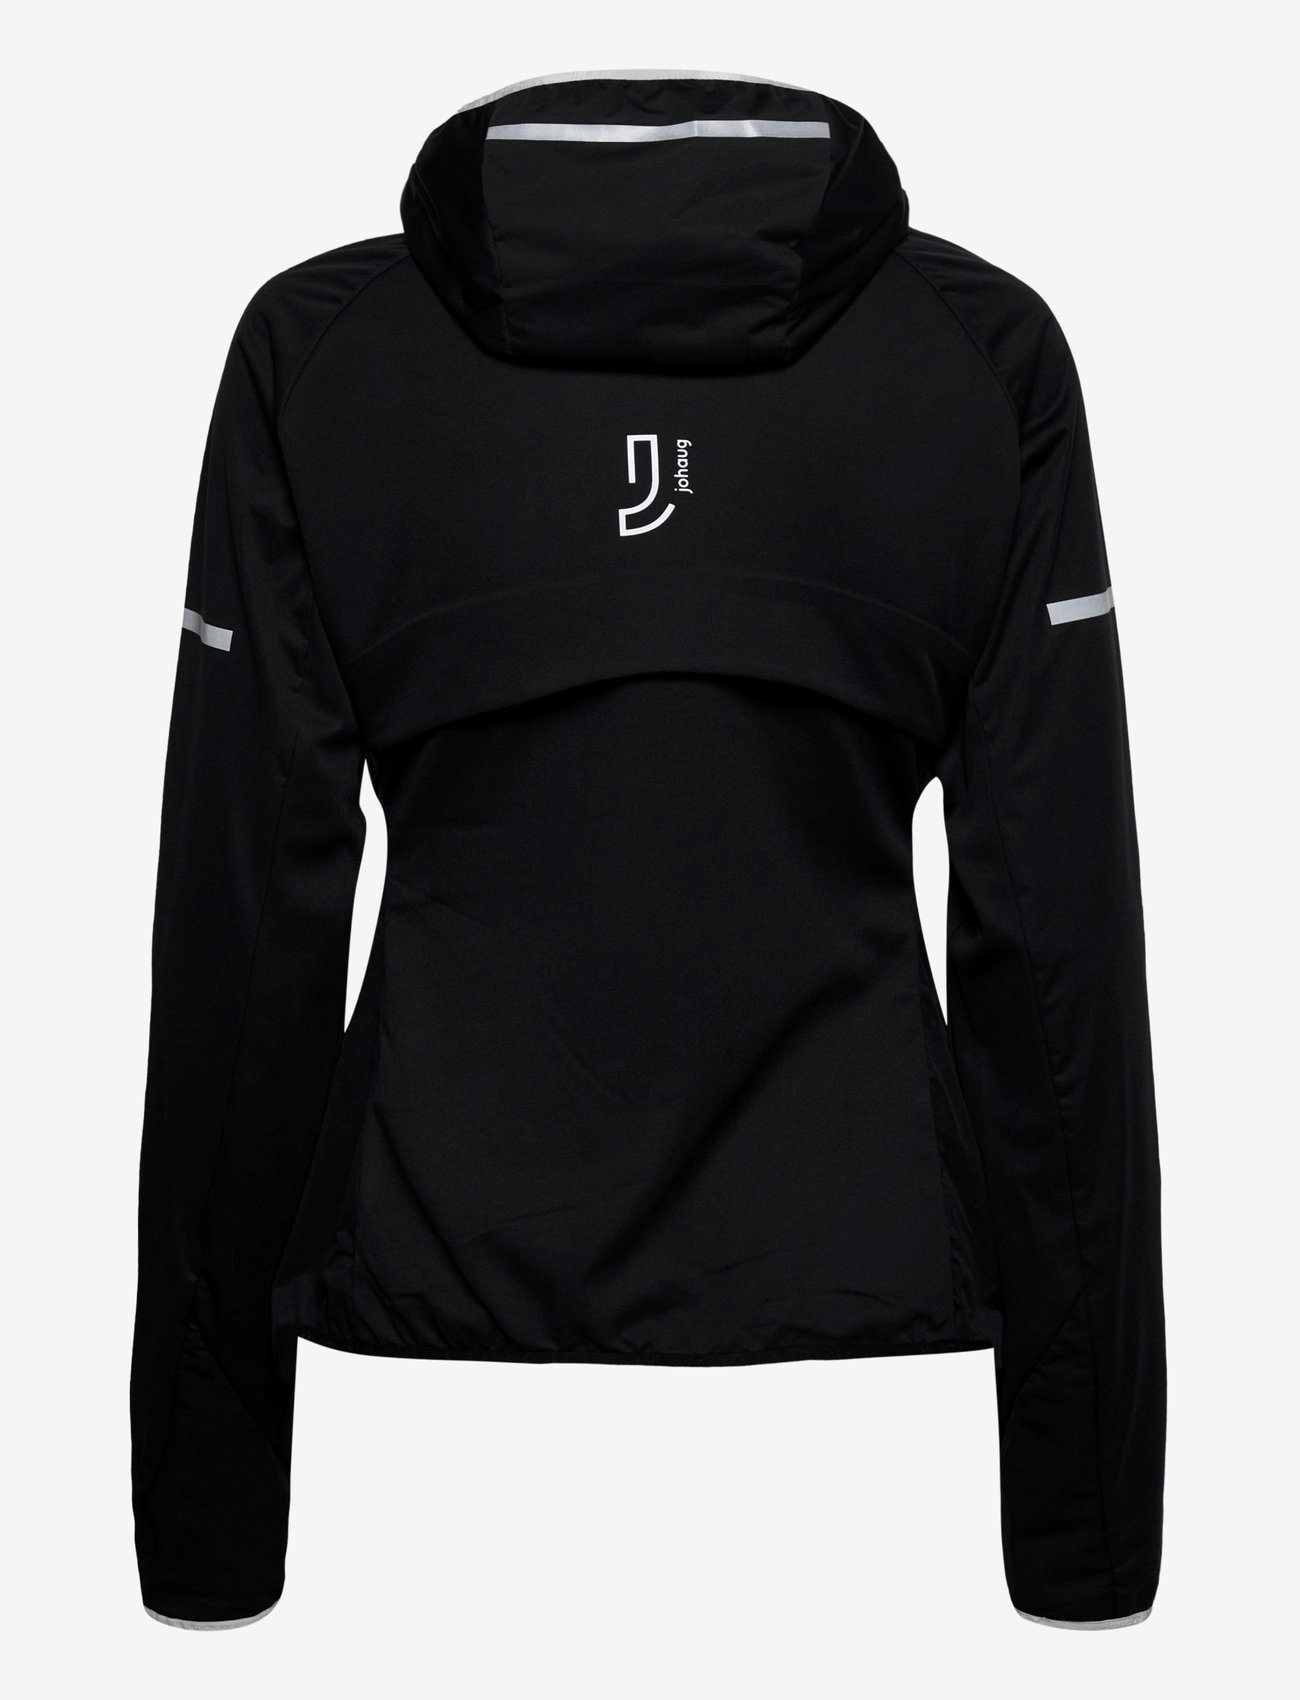 Johaug - Concept Jacket - vabaõhu- ja vihmajoped - tblck - 1